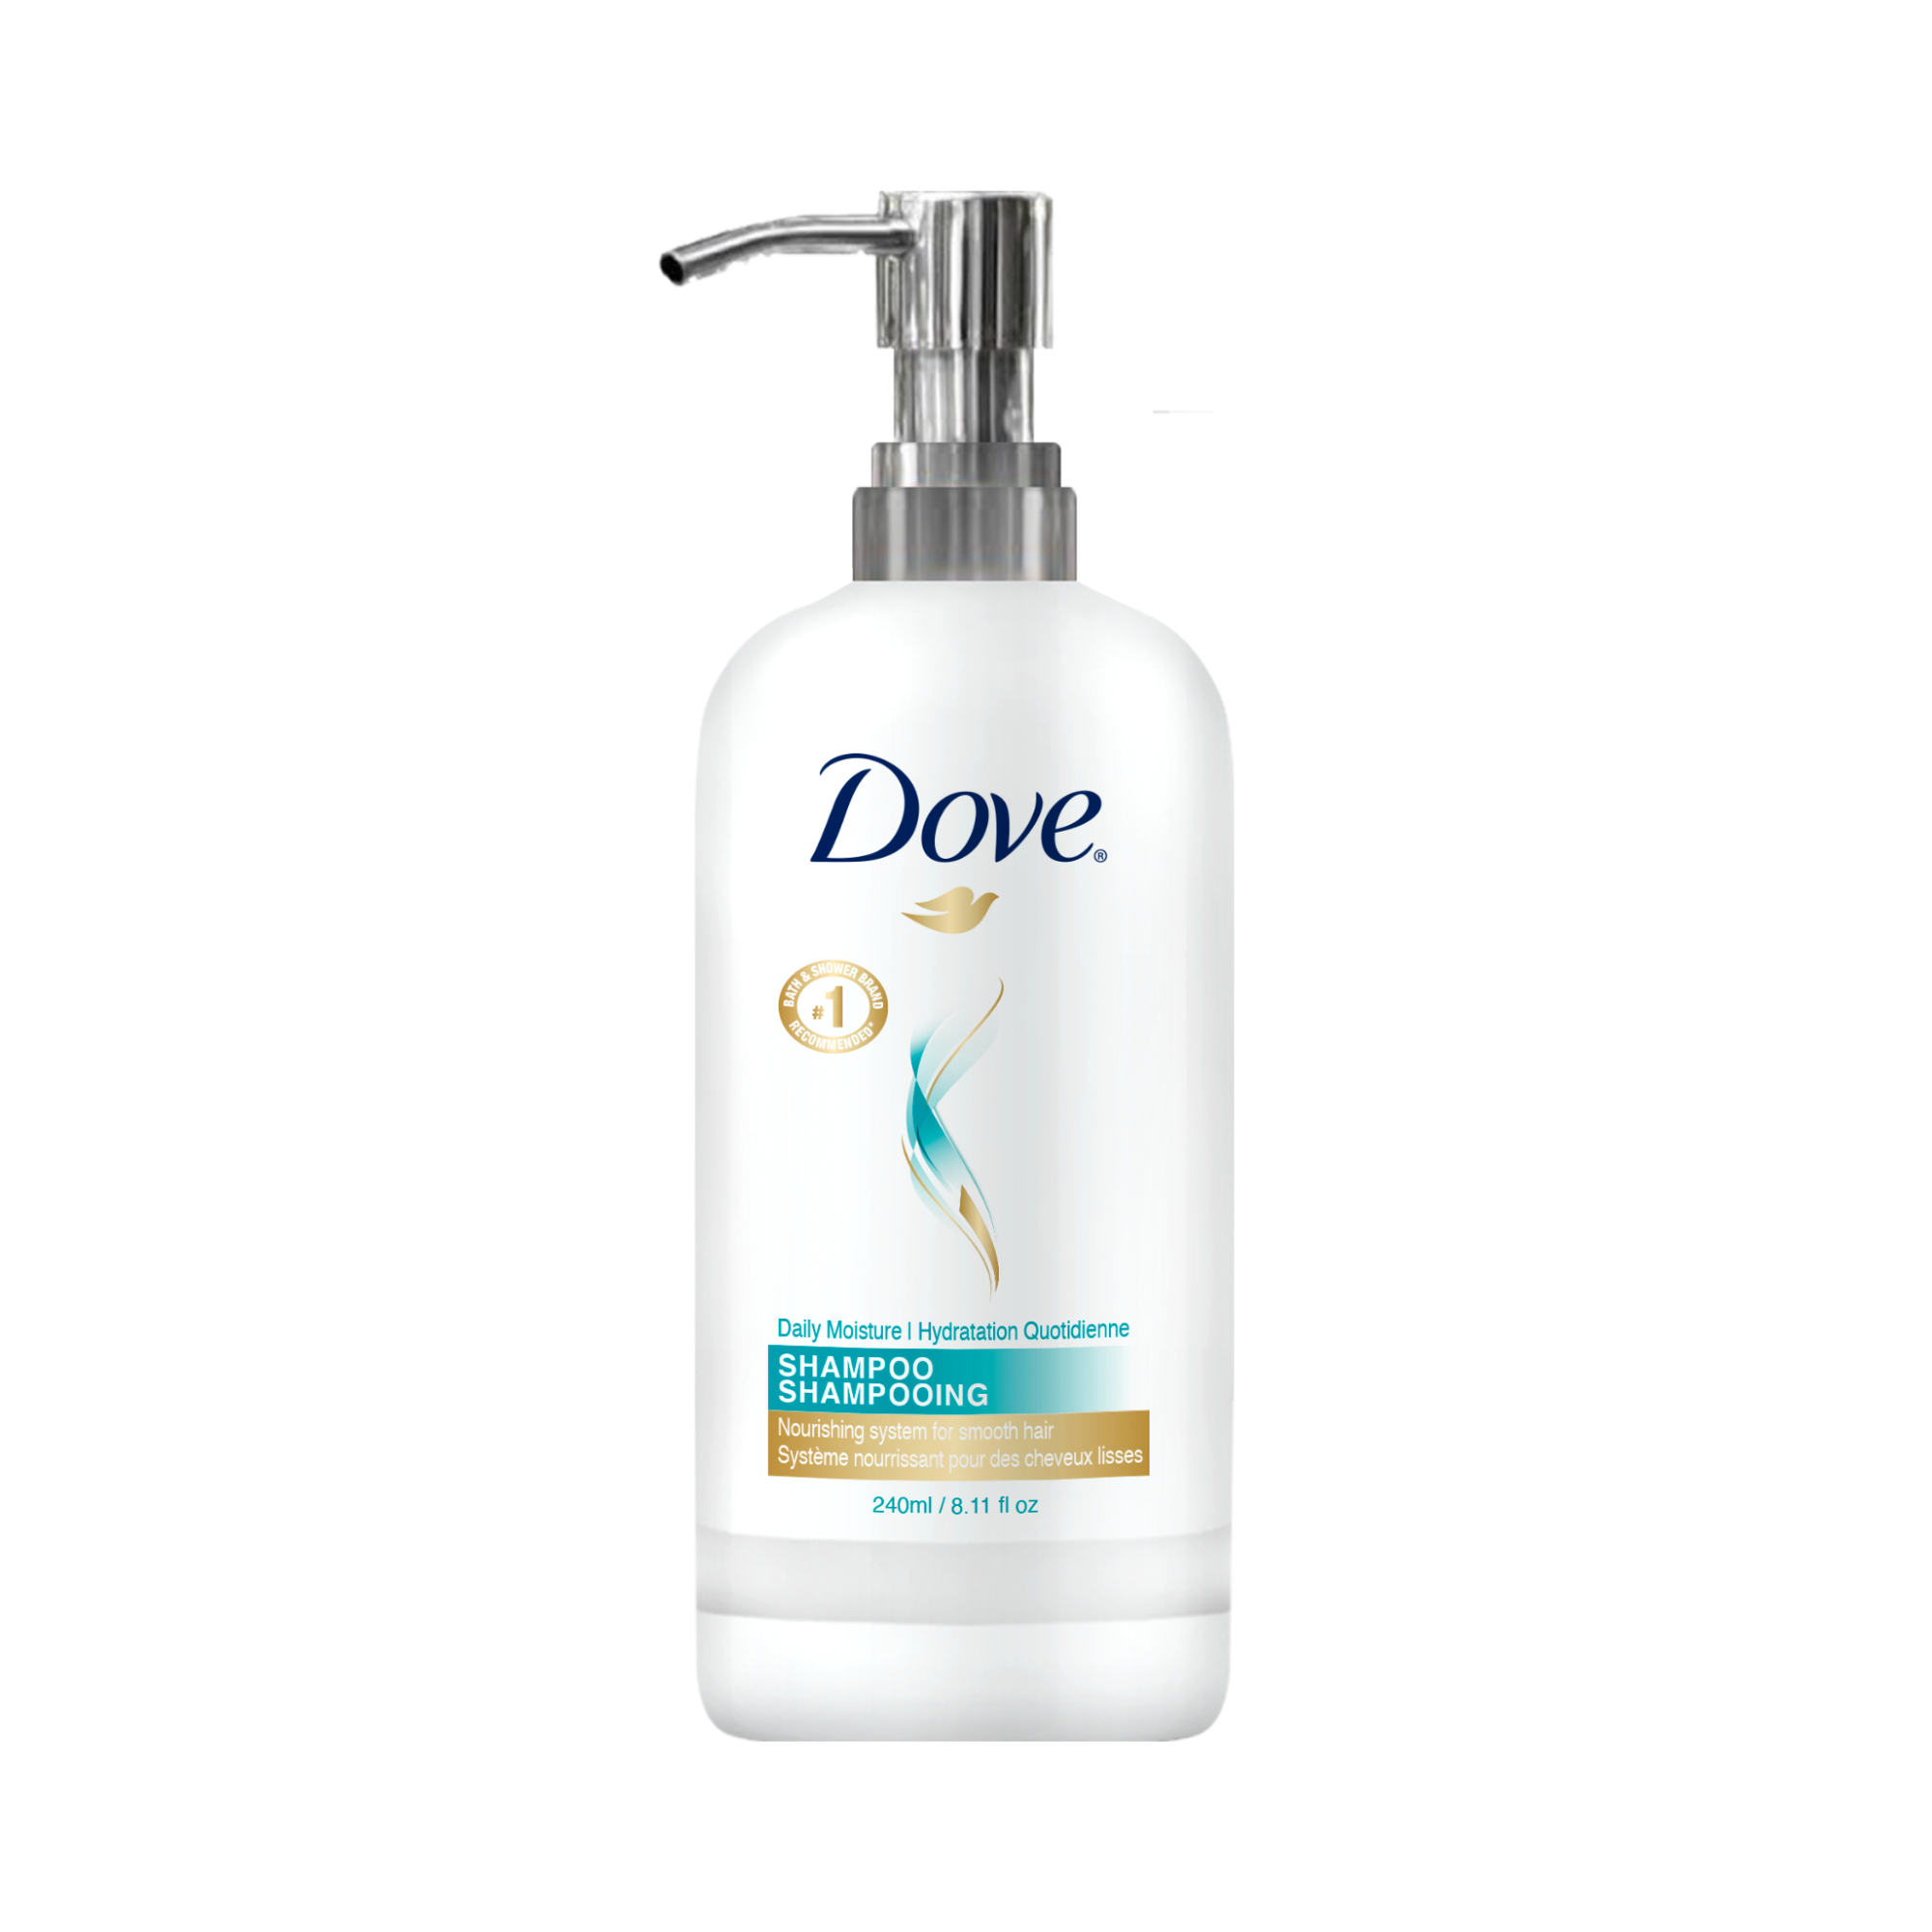 Dove Daily Moisture Shampoo bottle - 240ml